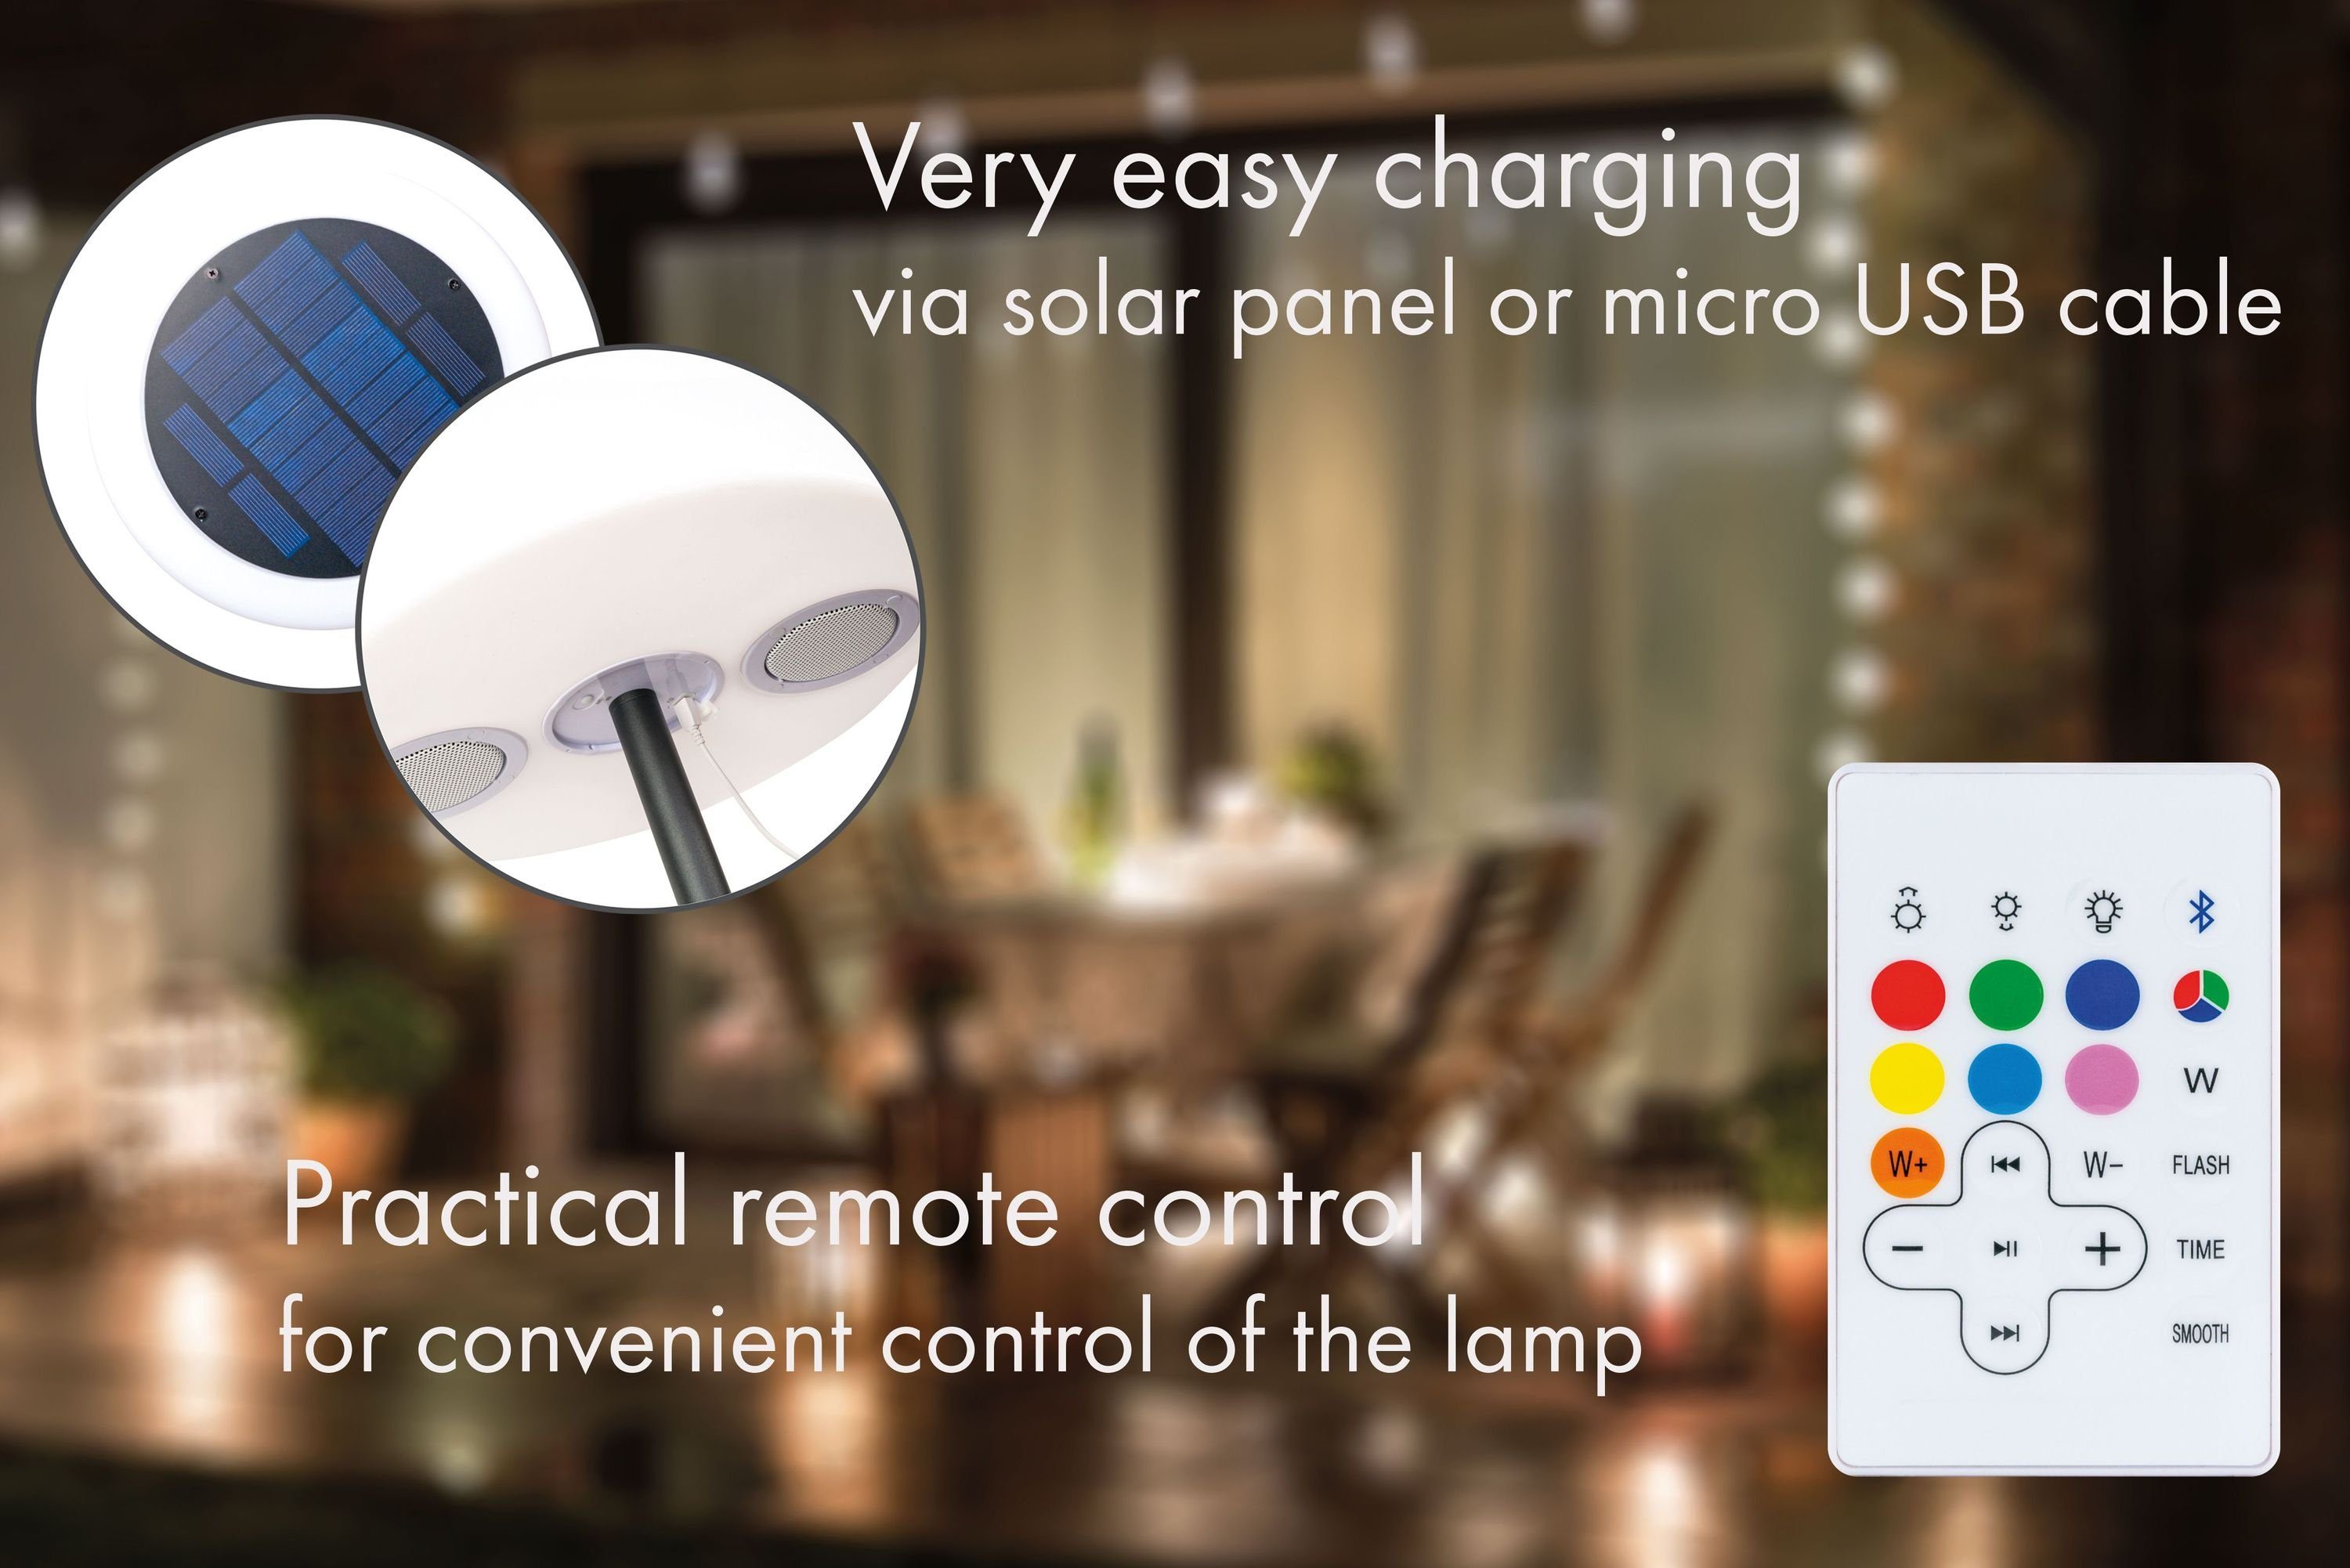 Farbwechseleffekt, Bluetooth IP44 Lampe, Lautsprecher, Schwaiger LED Lichtmodi, Ein-/Ausschalten Lautsprecher, verschiedene LED, farbwechsel, Außen-Stehlampe der 661828, zum Fernbedienung integrierter